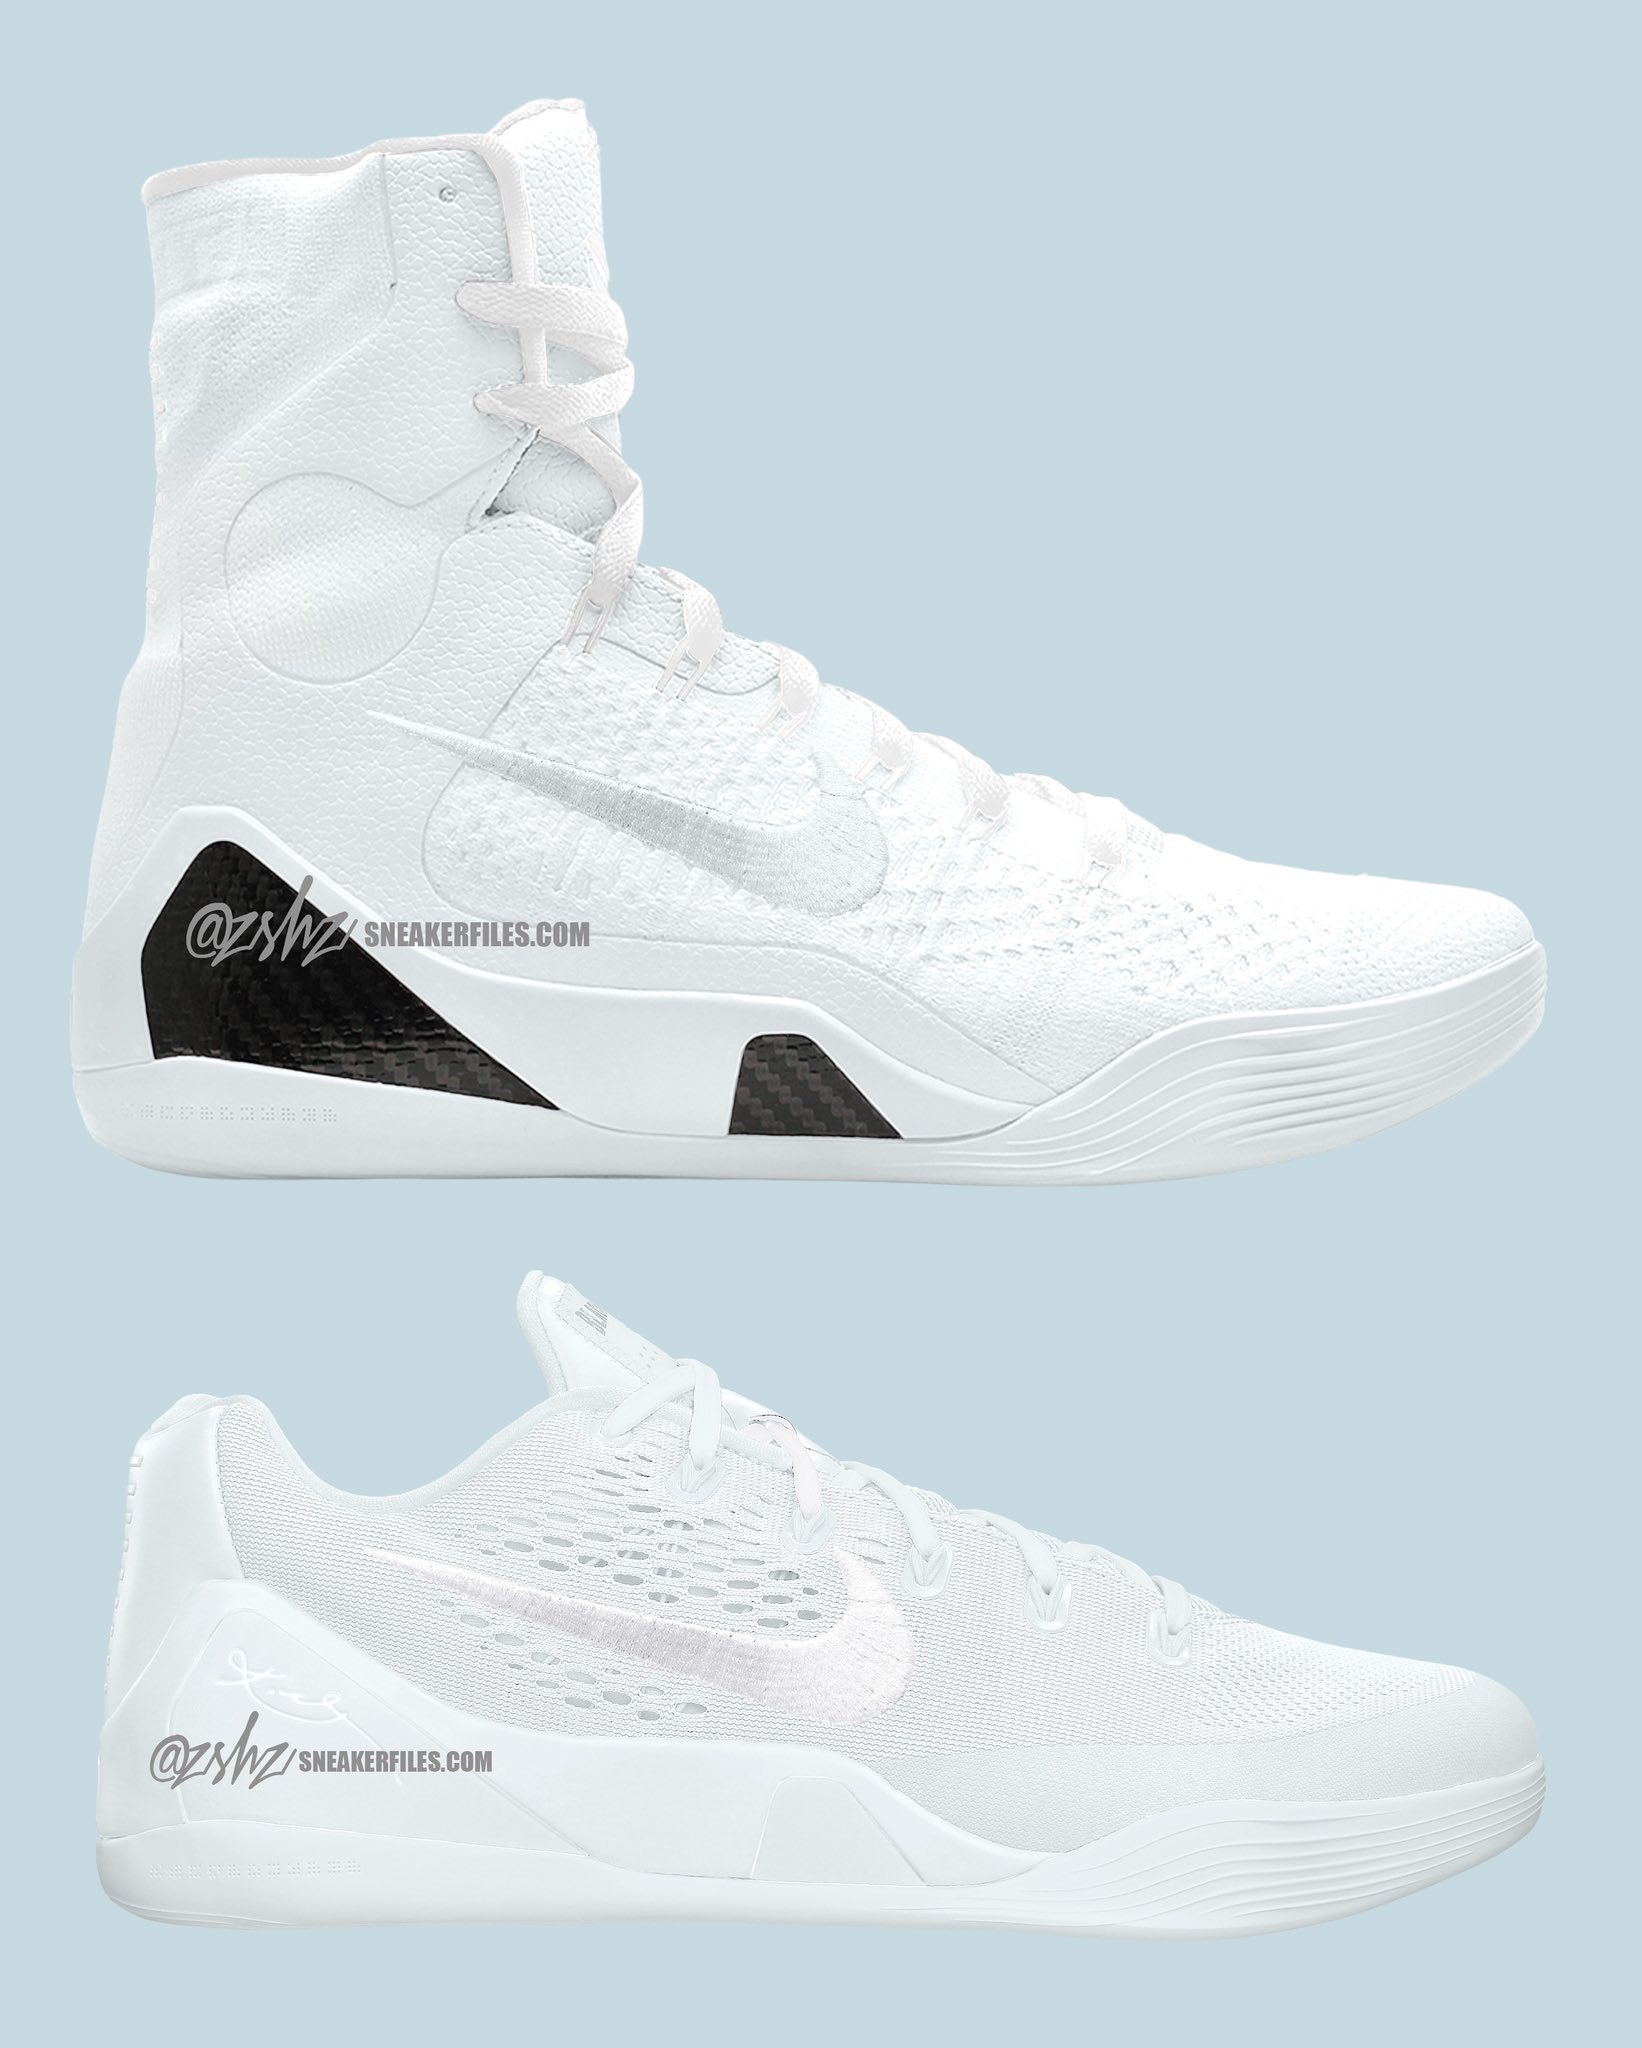 Air Jordan Fall 2022 Release Preview - Sneaker Bar Detroit